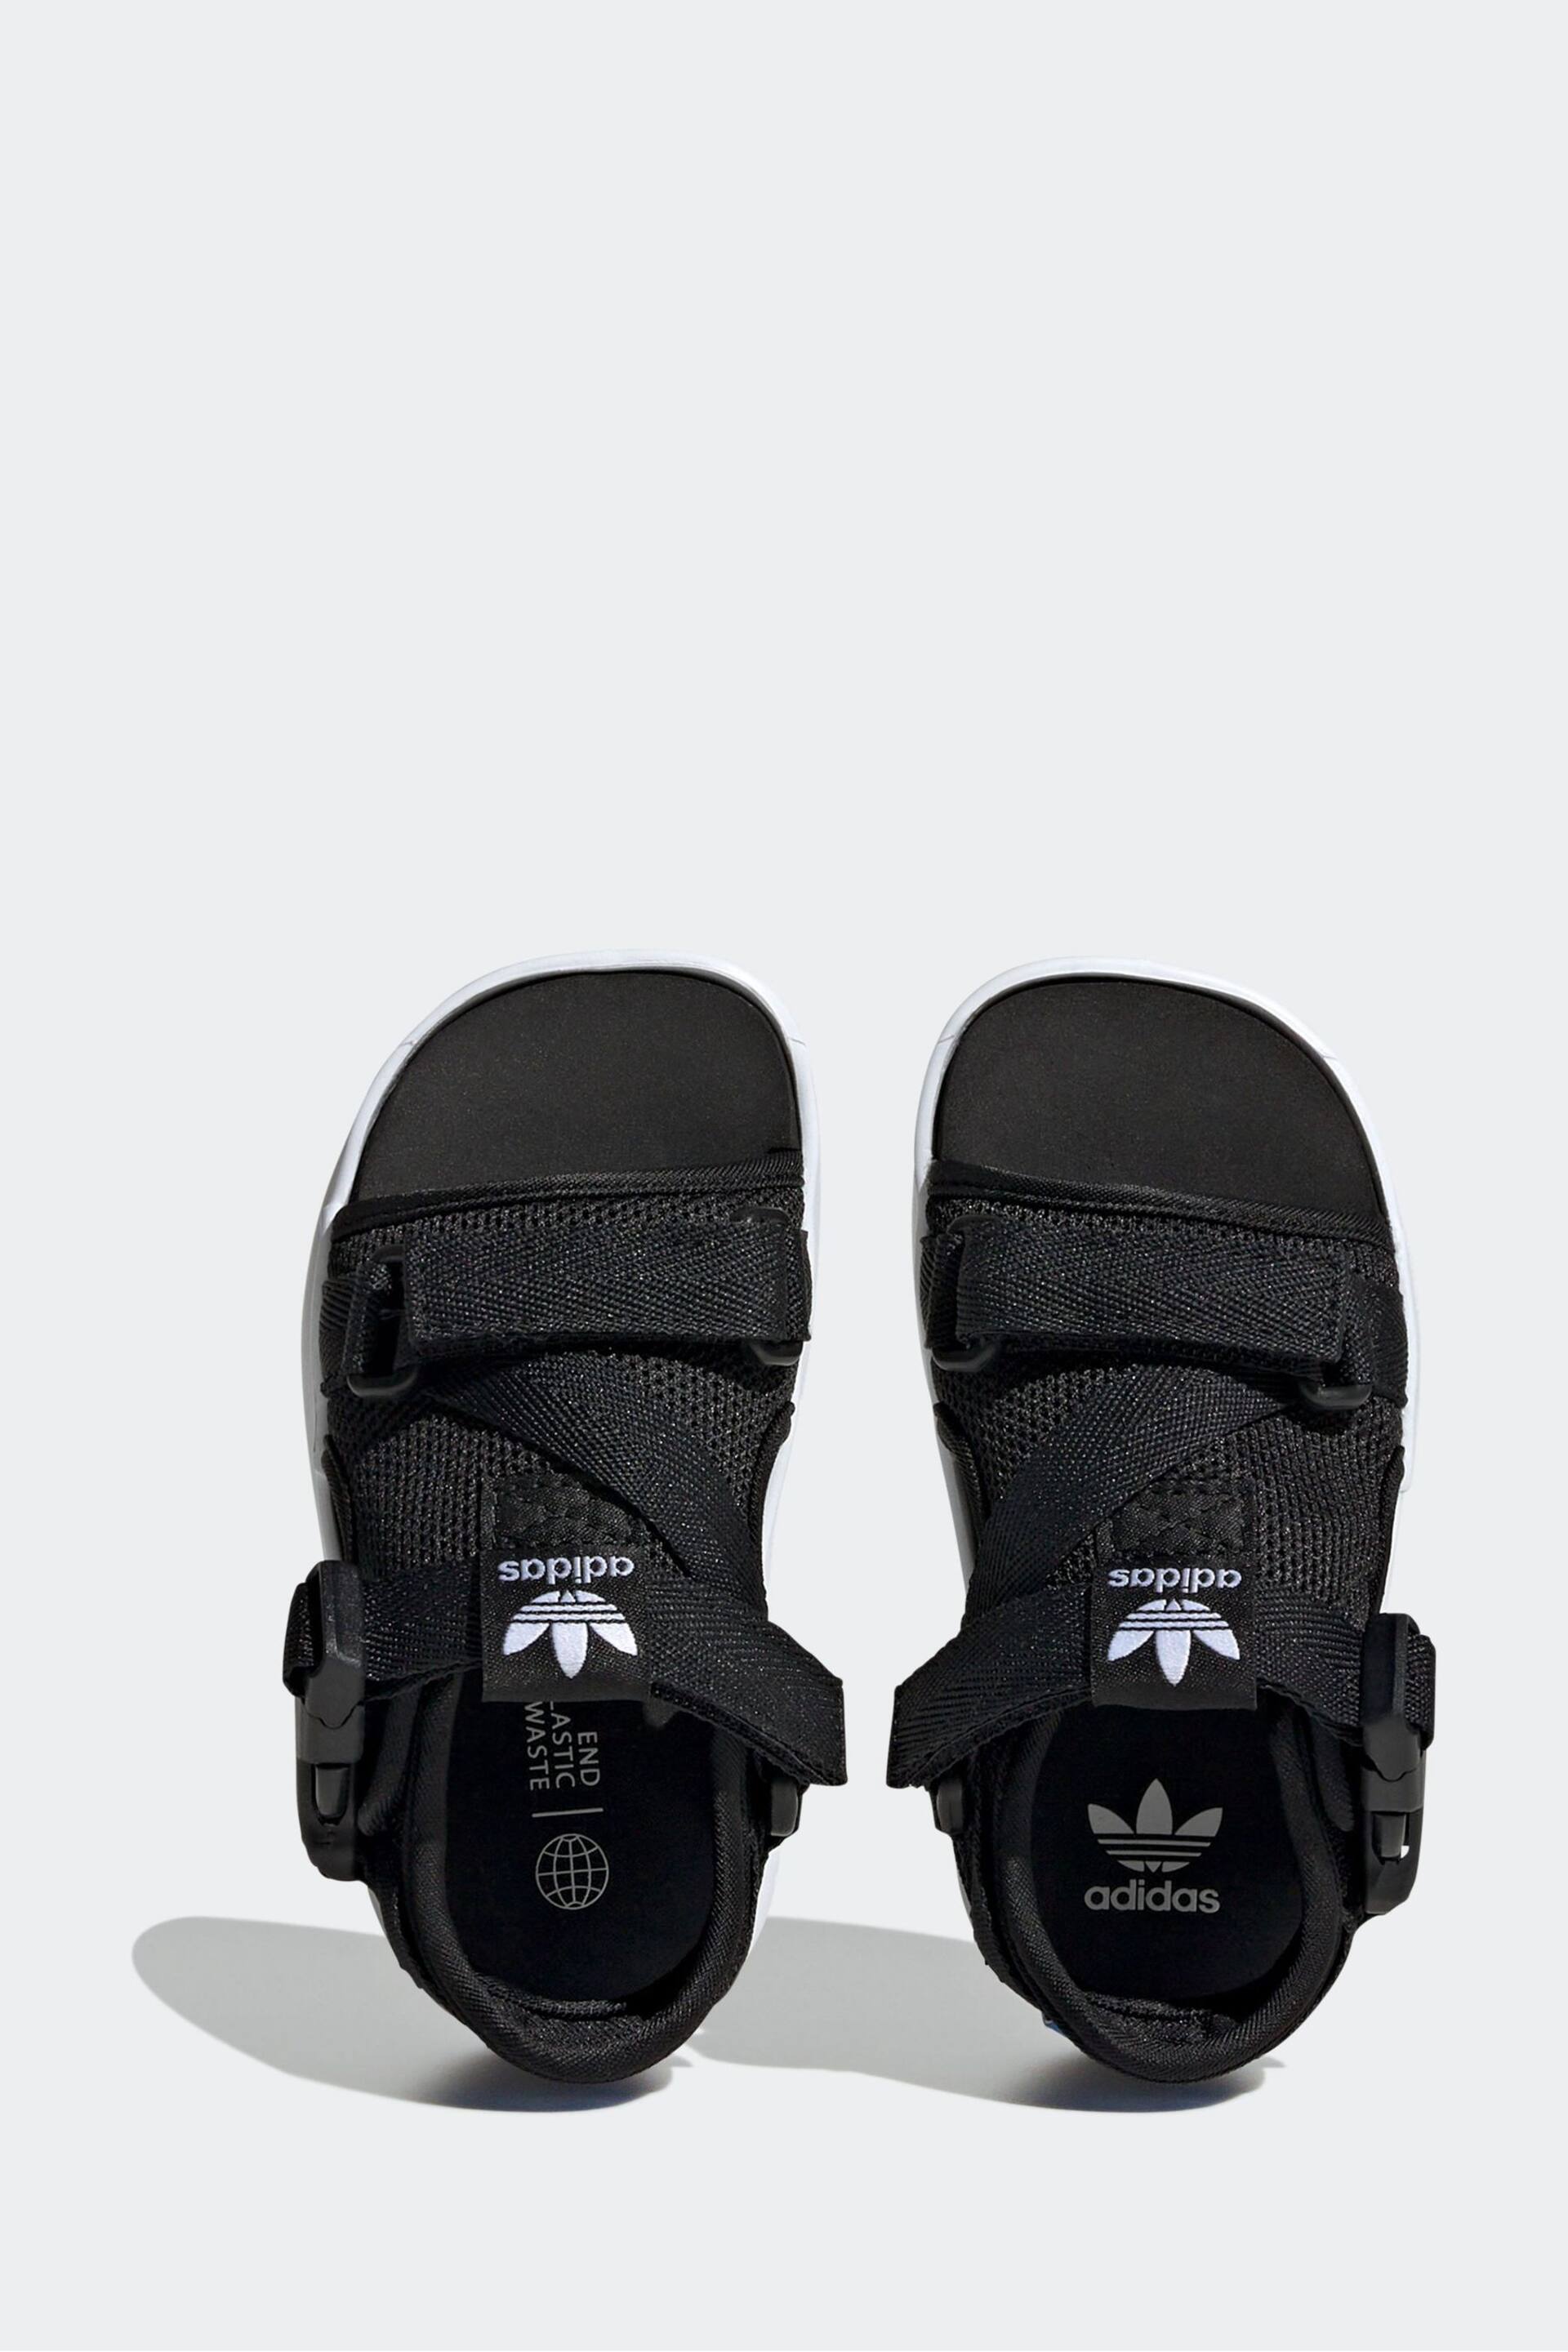 adidas Originals 360 3.0 Black Sandals - Image 6 of 9